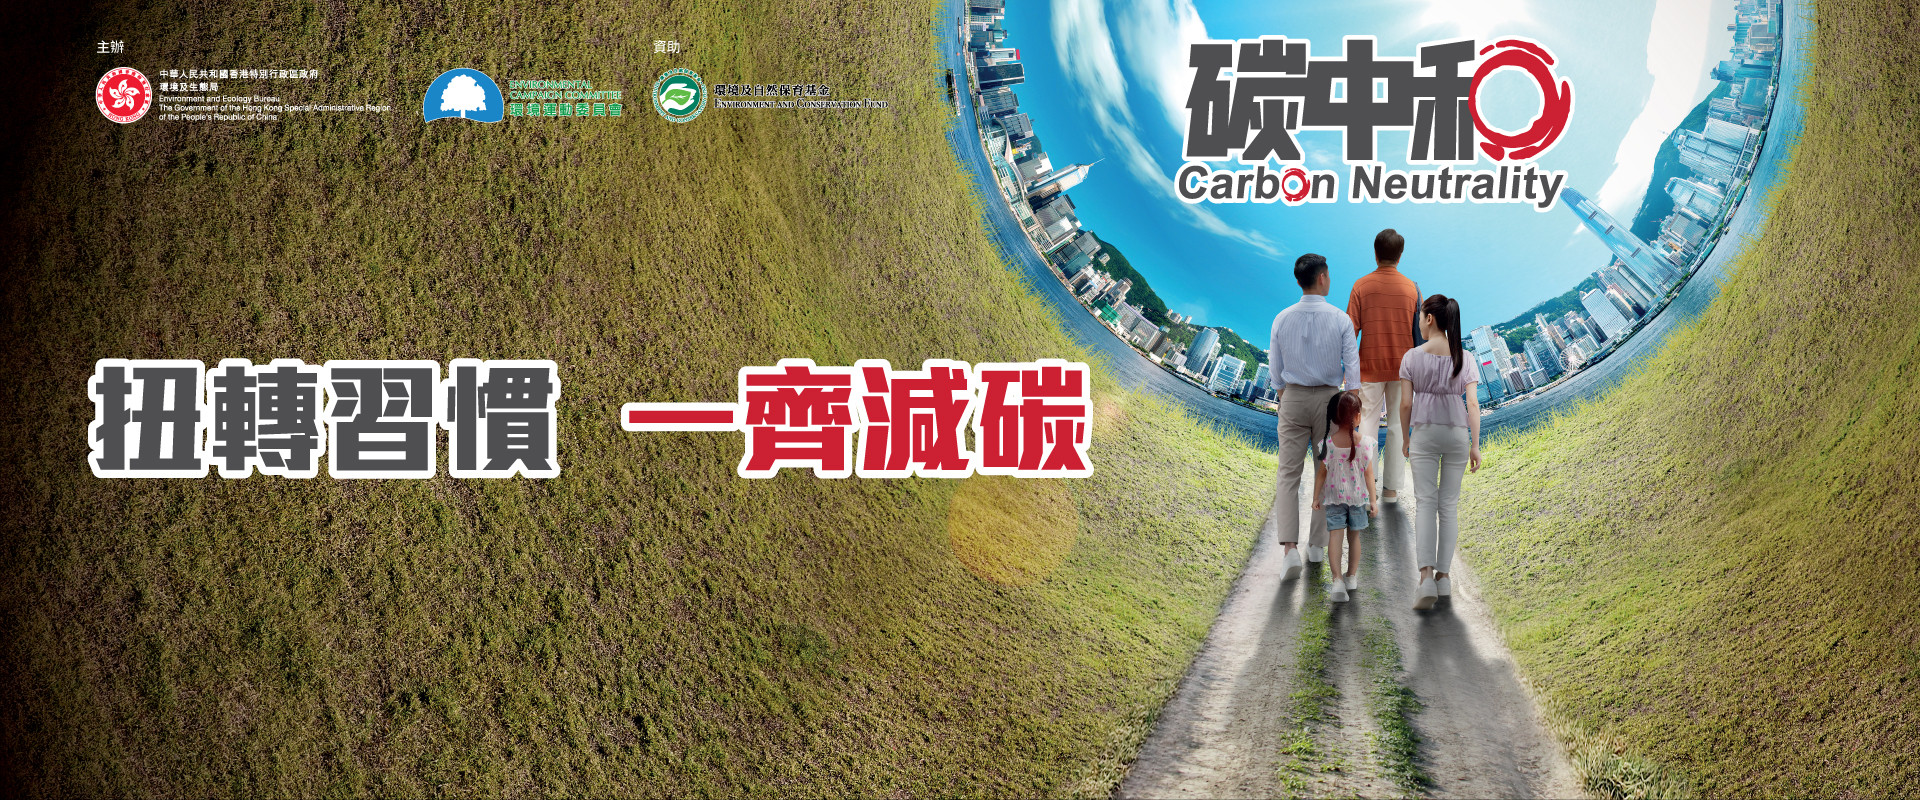 Carbon Neutrality Publicity Campaign